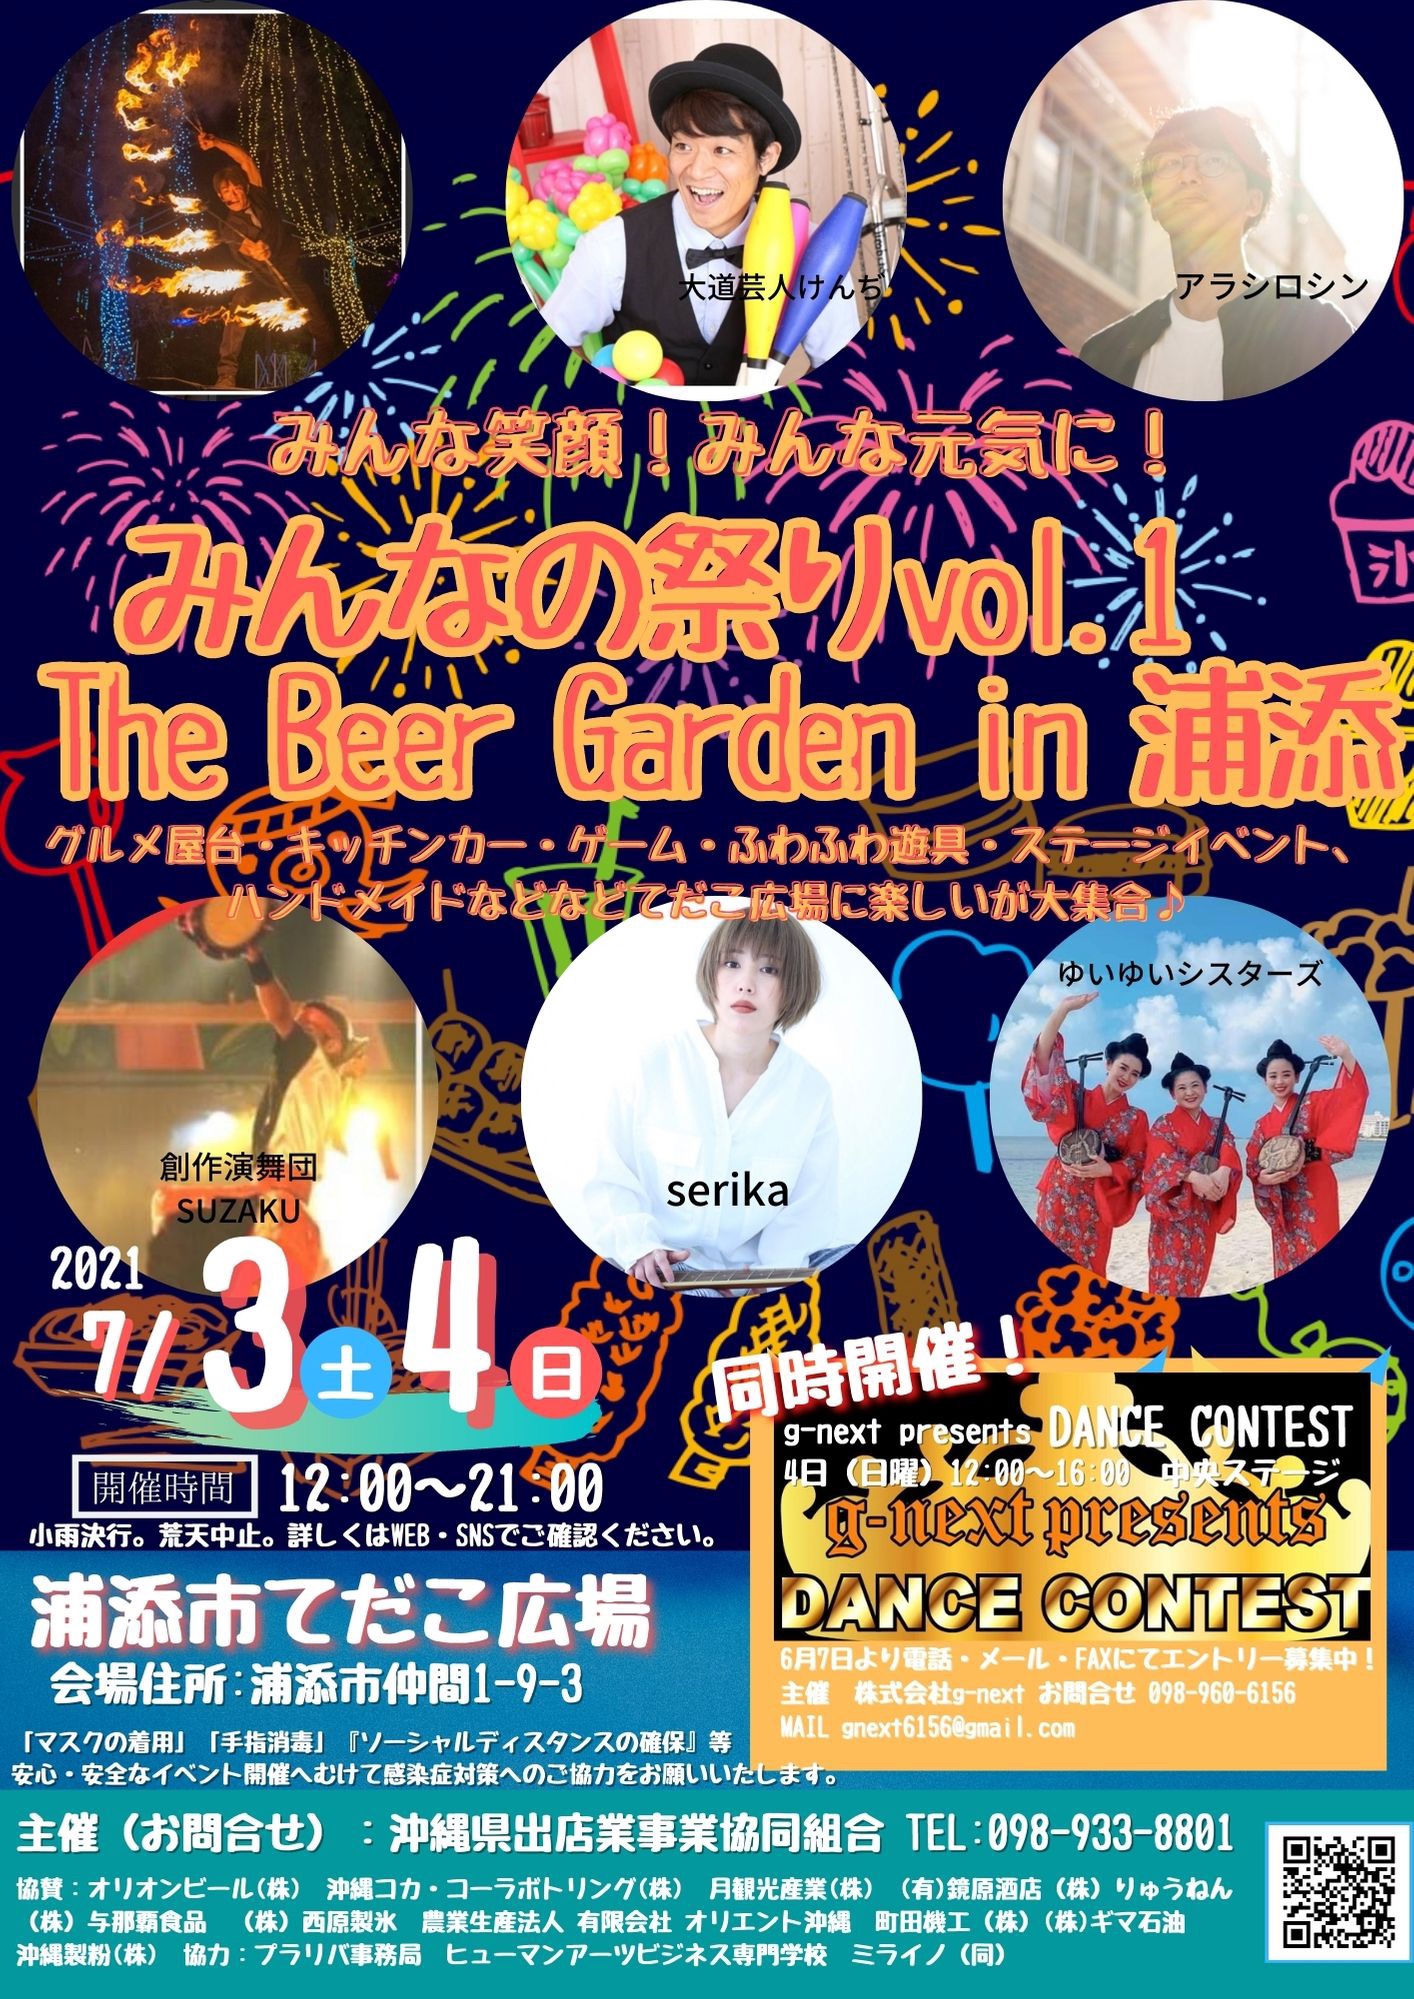 みんなの祭りvol1 the beer garden in浦添